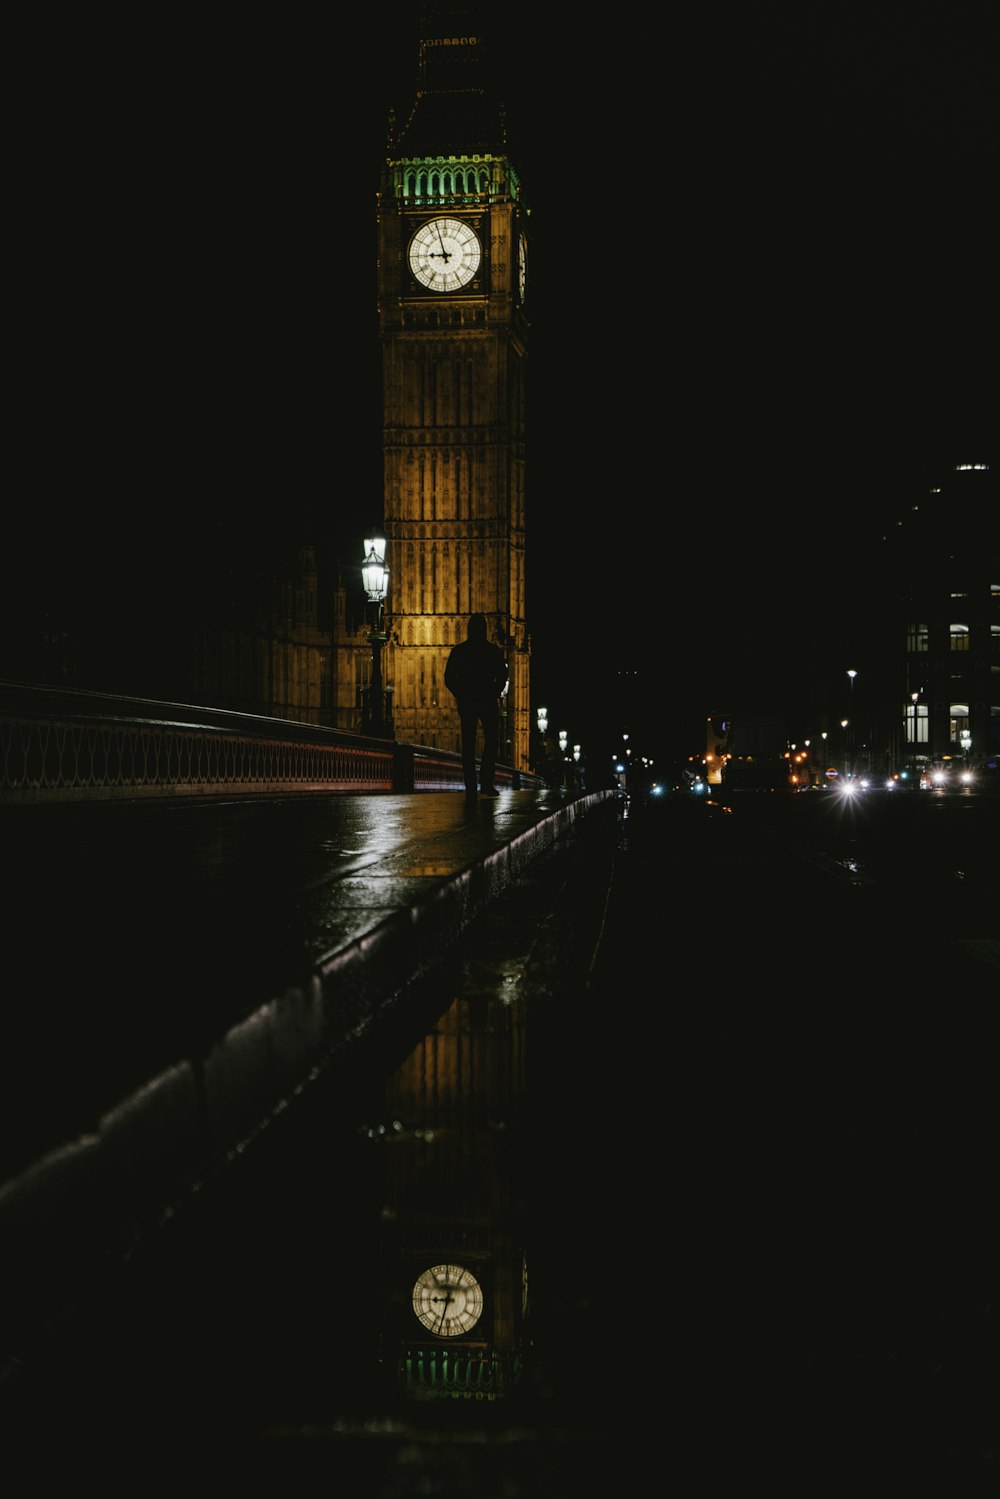 foto de la silueta del hombre caminando cerca del Big Ben durante la noche